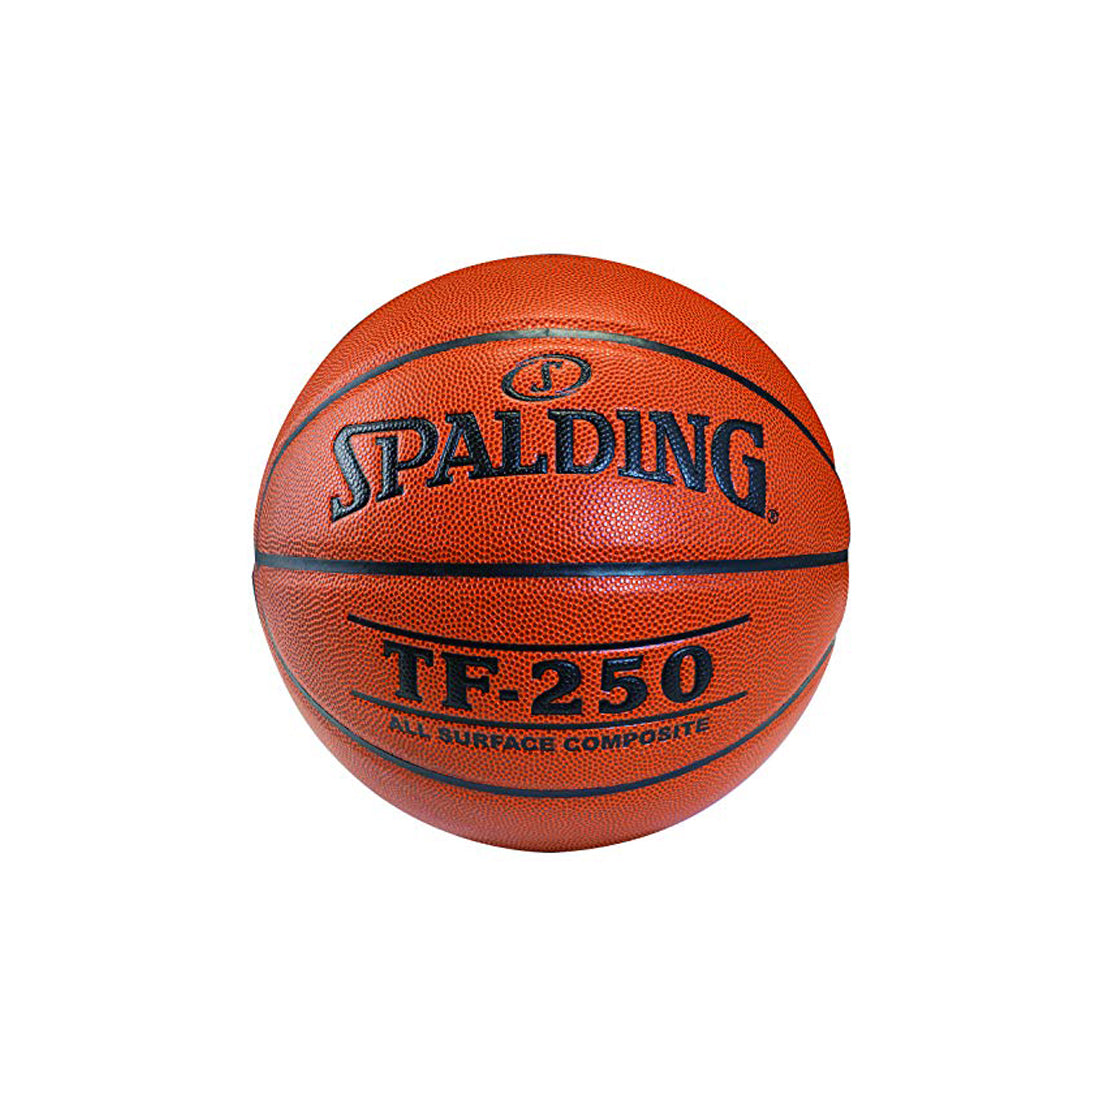 स्पाल्डिंग टीएफ 250 बास्केटबॉल